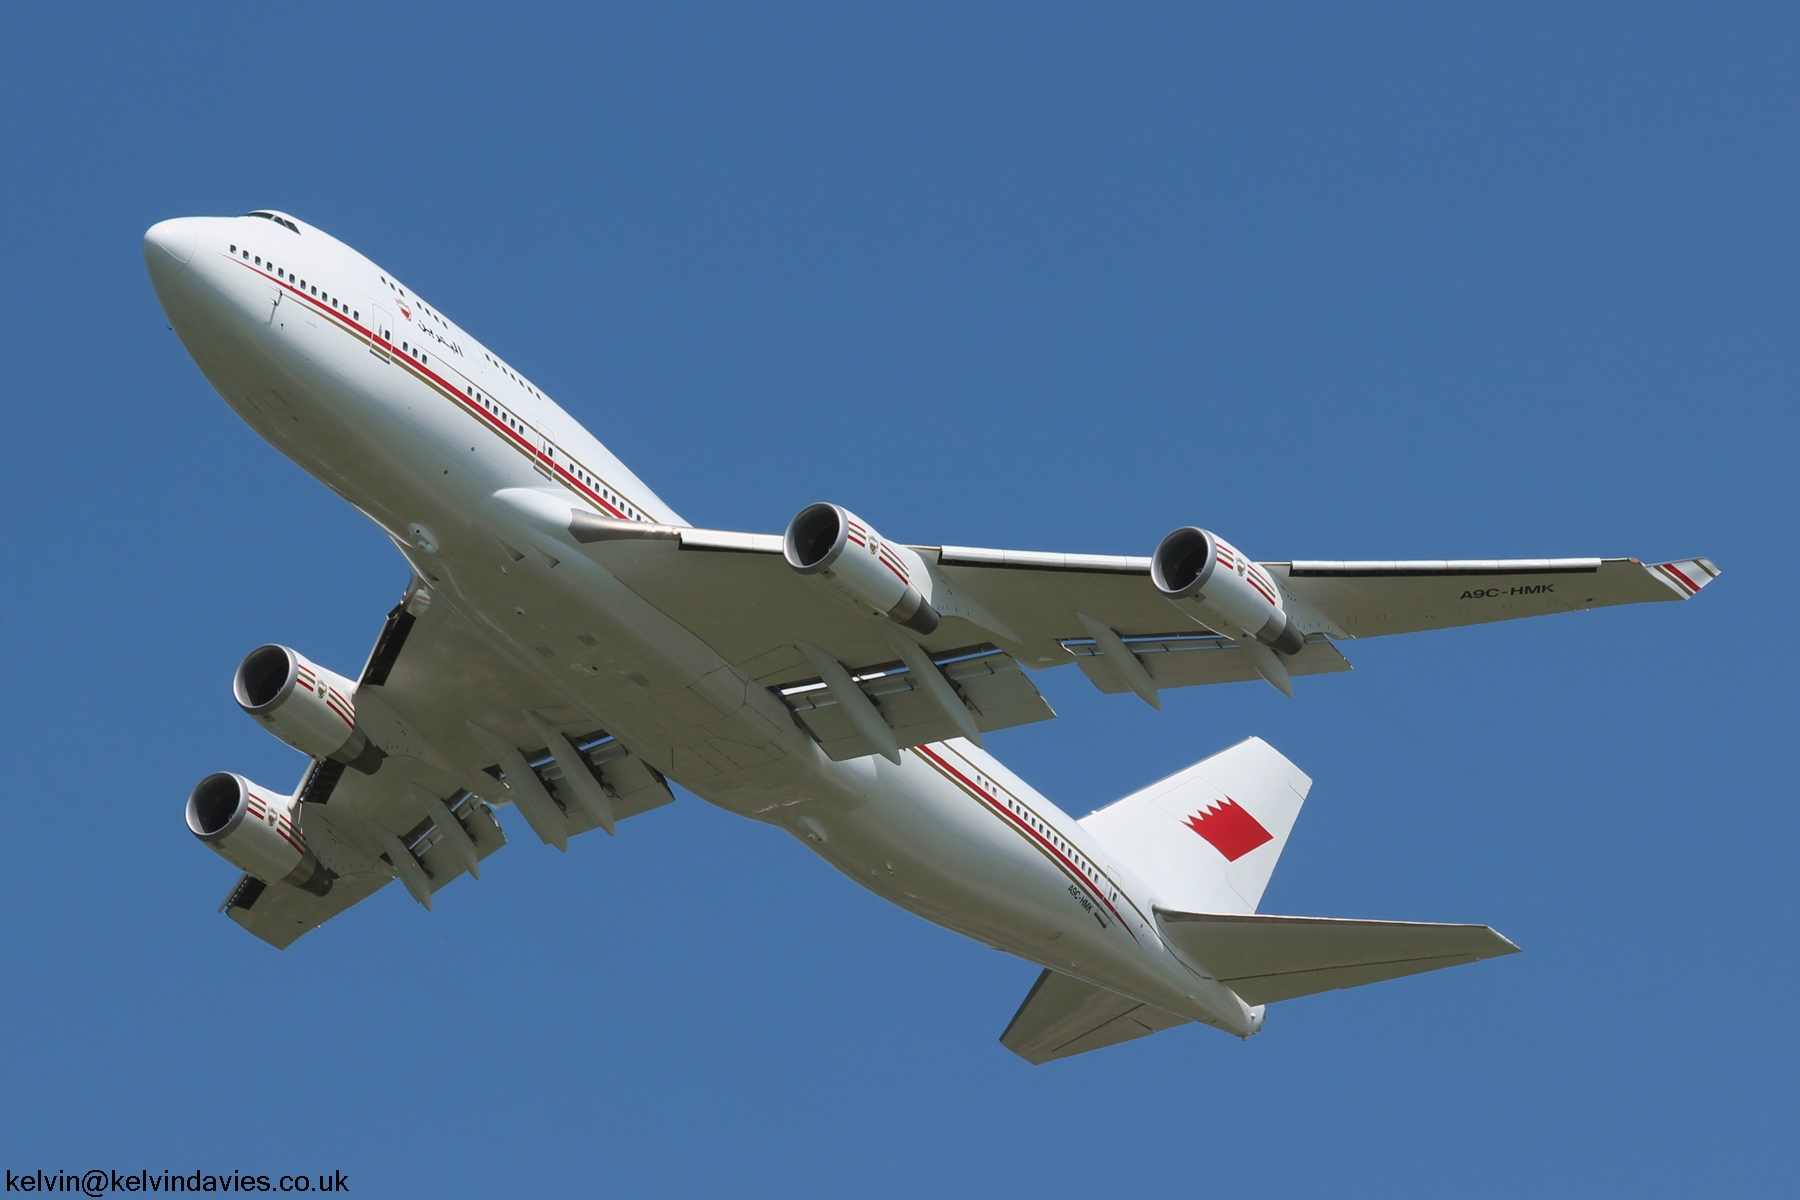 Bahrain Royal Flight B747 A9C-HMK